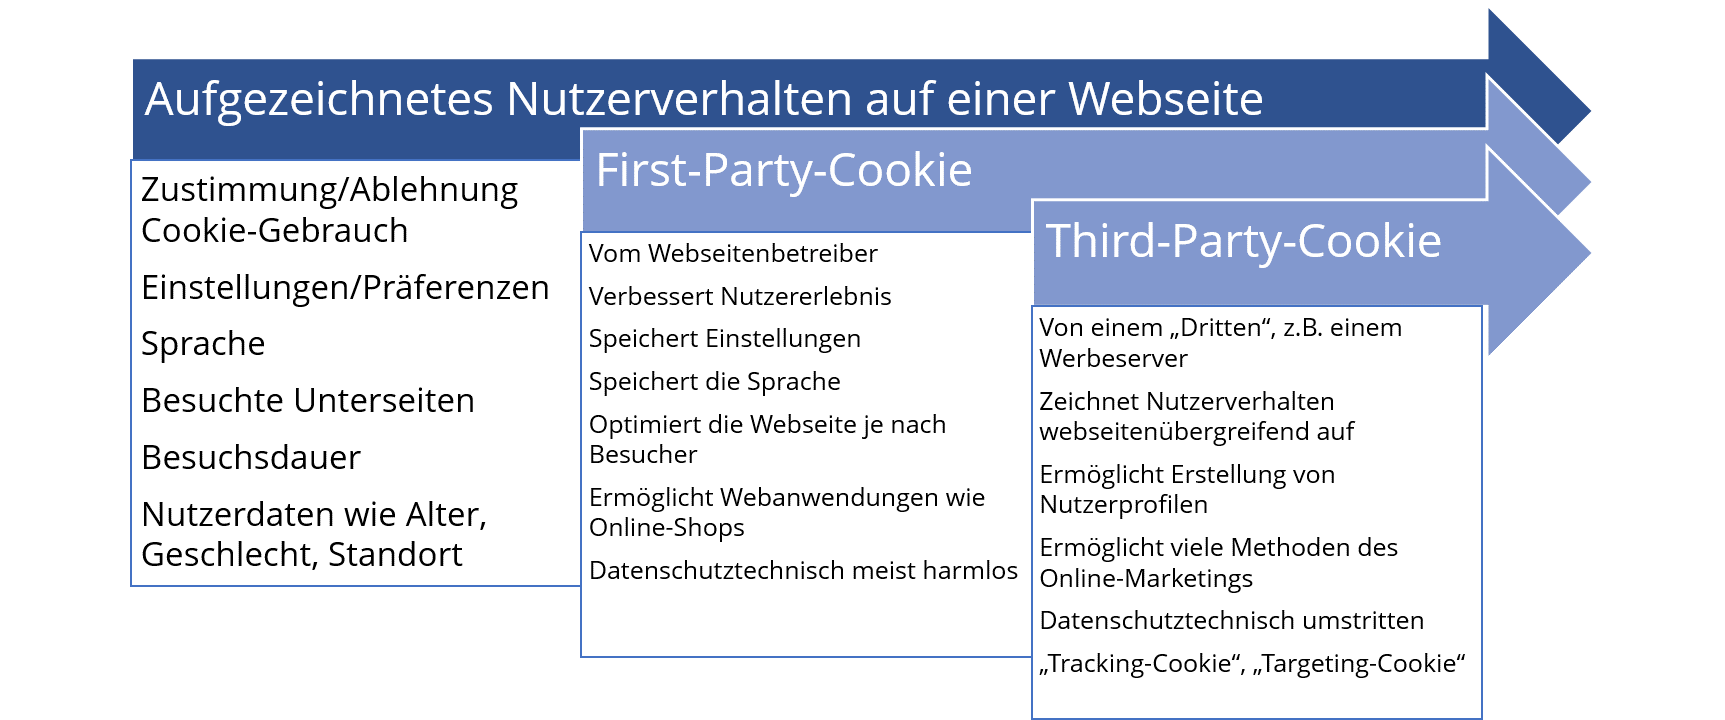 First-Party-Cookie und Third-Party-Cookie zeichnen dieselben Daten auf, allerdings für sehr unterschiedliche Zwecke.